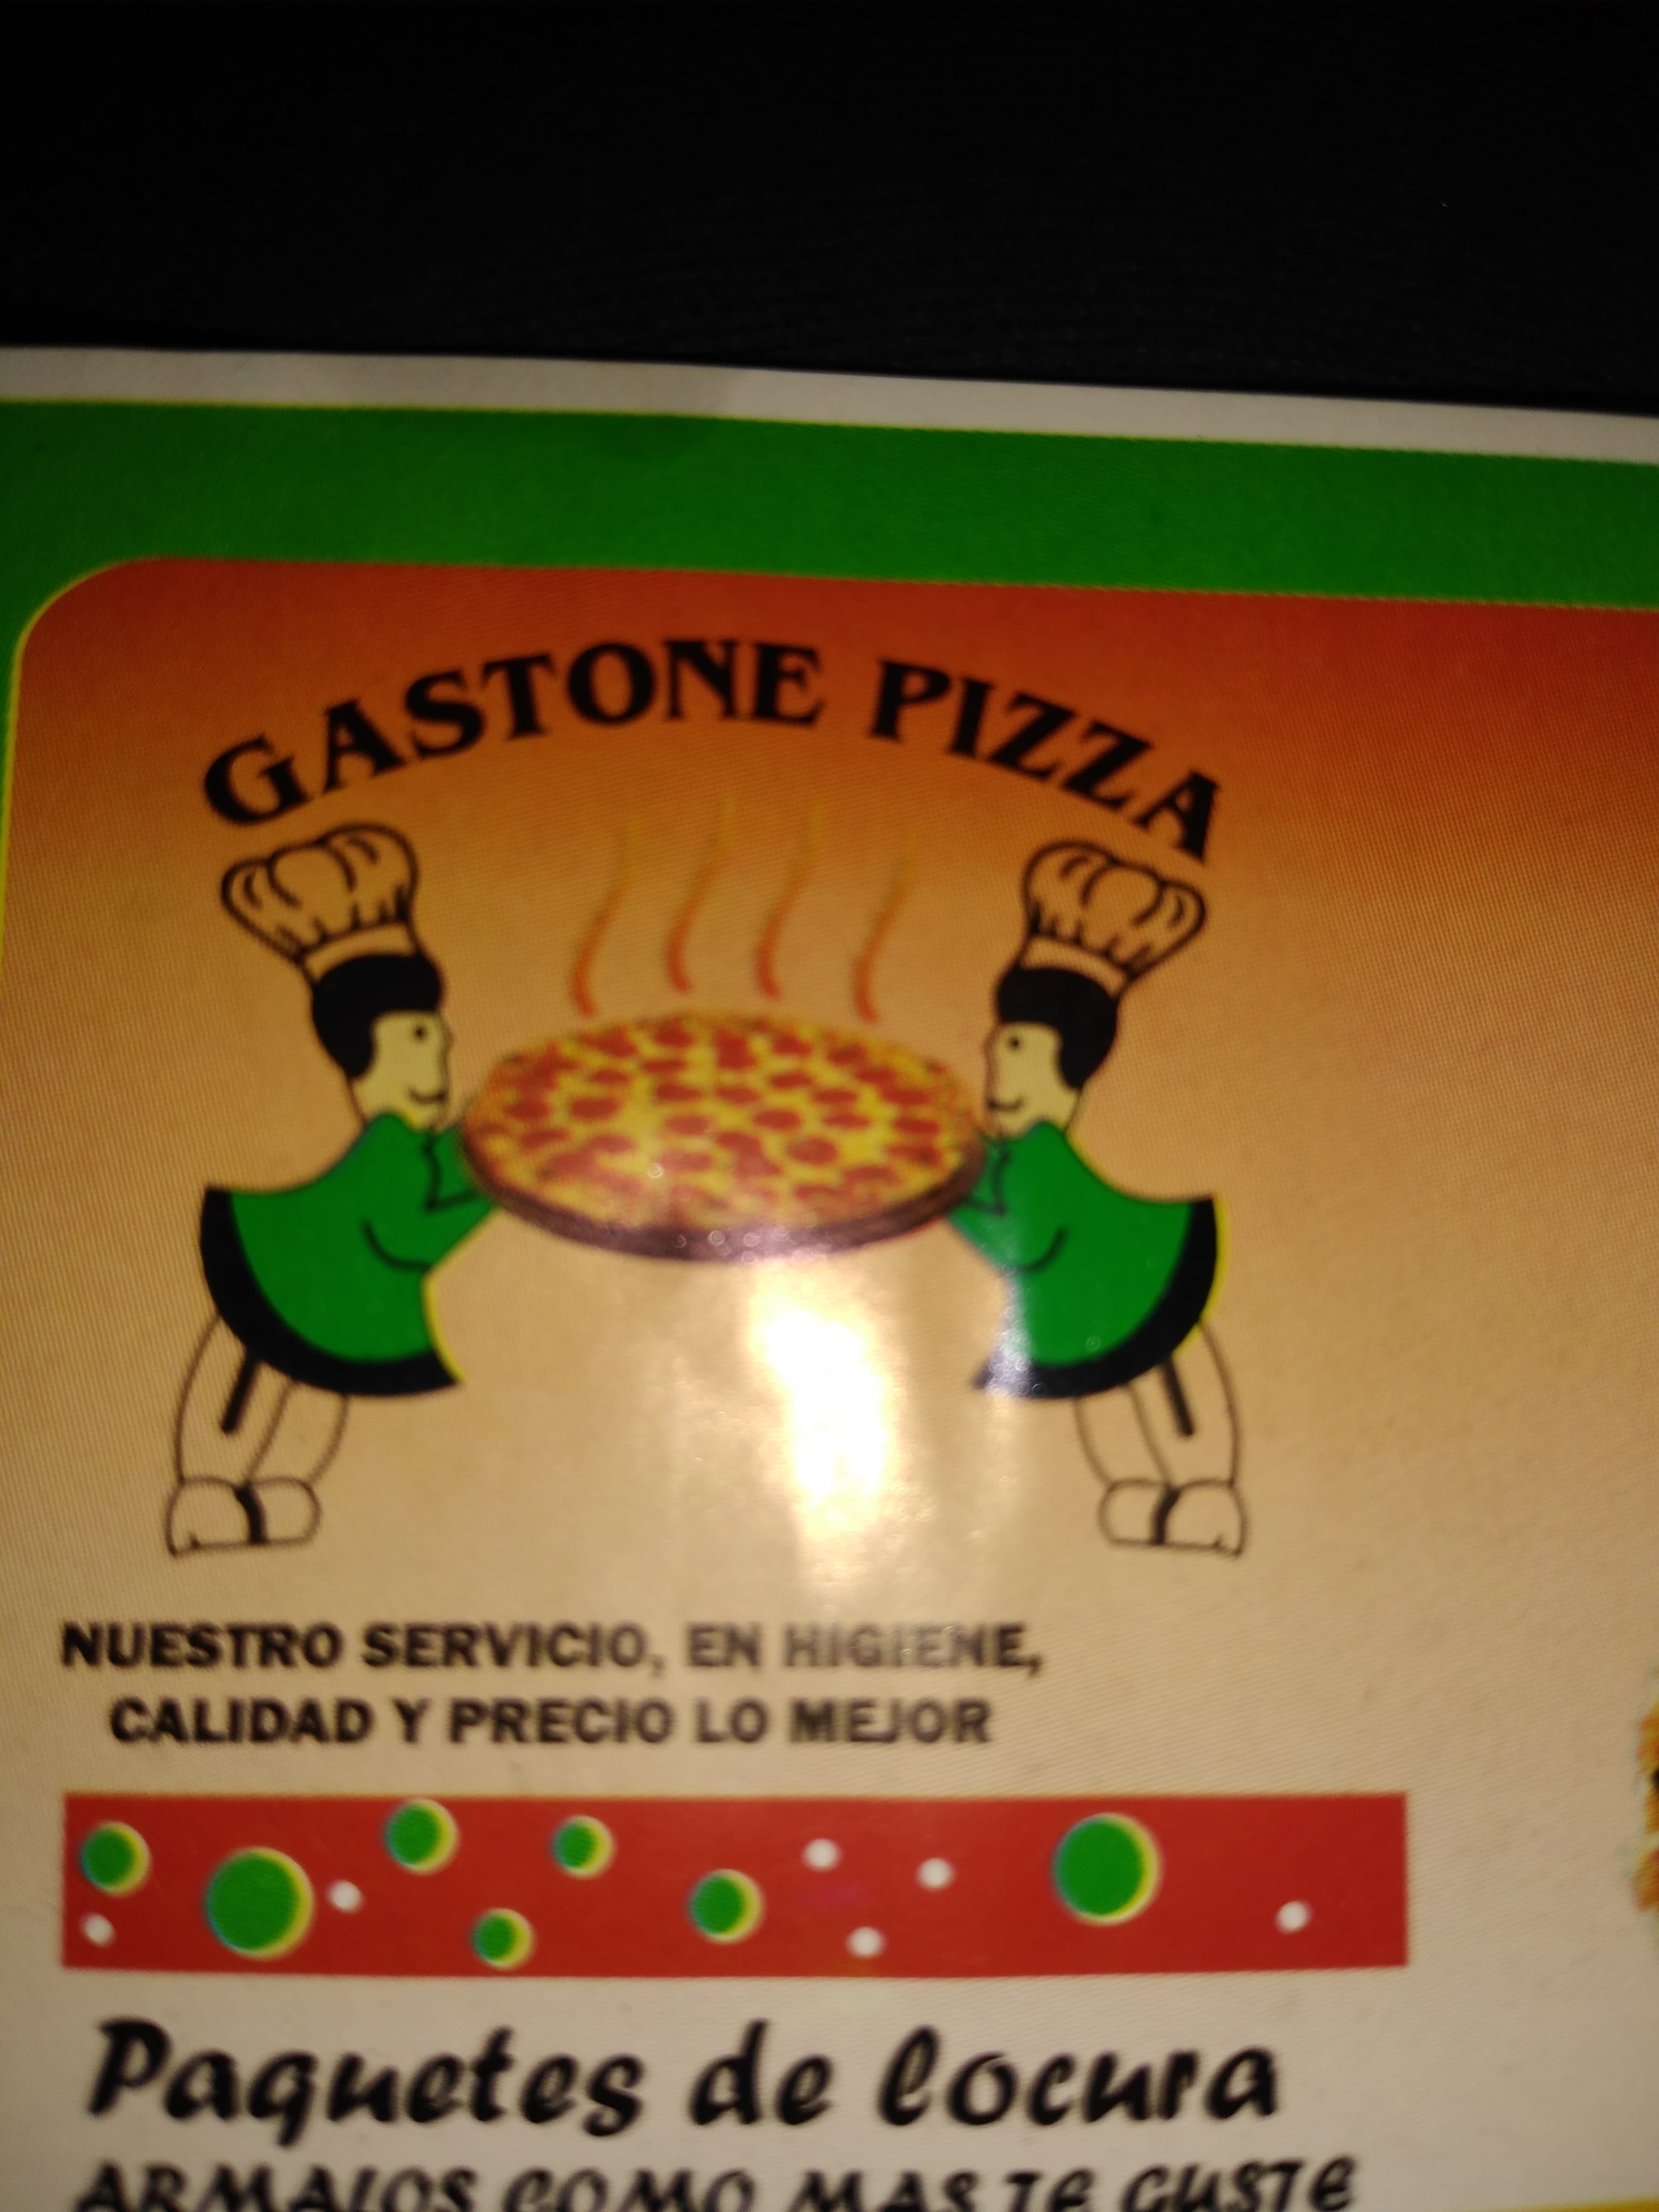 Gastone Pizza